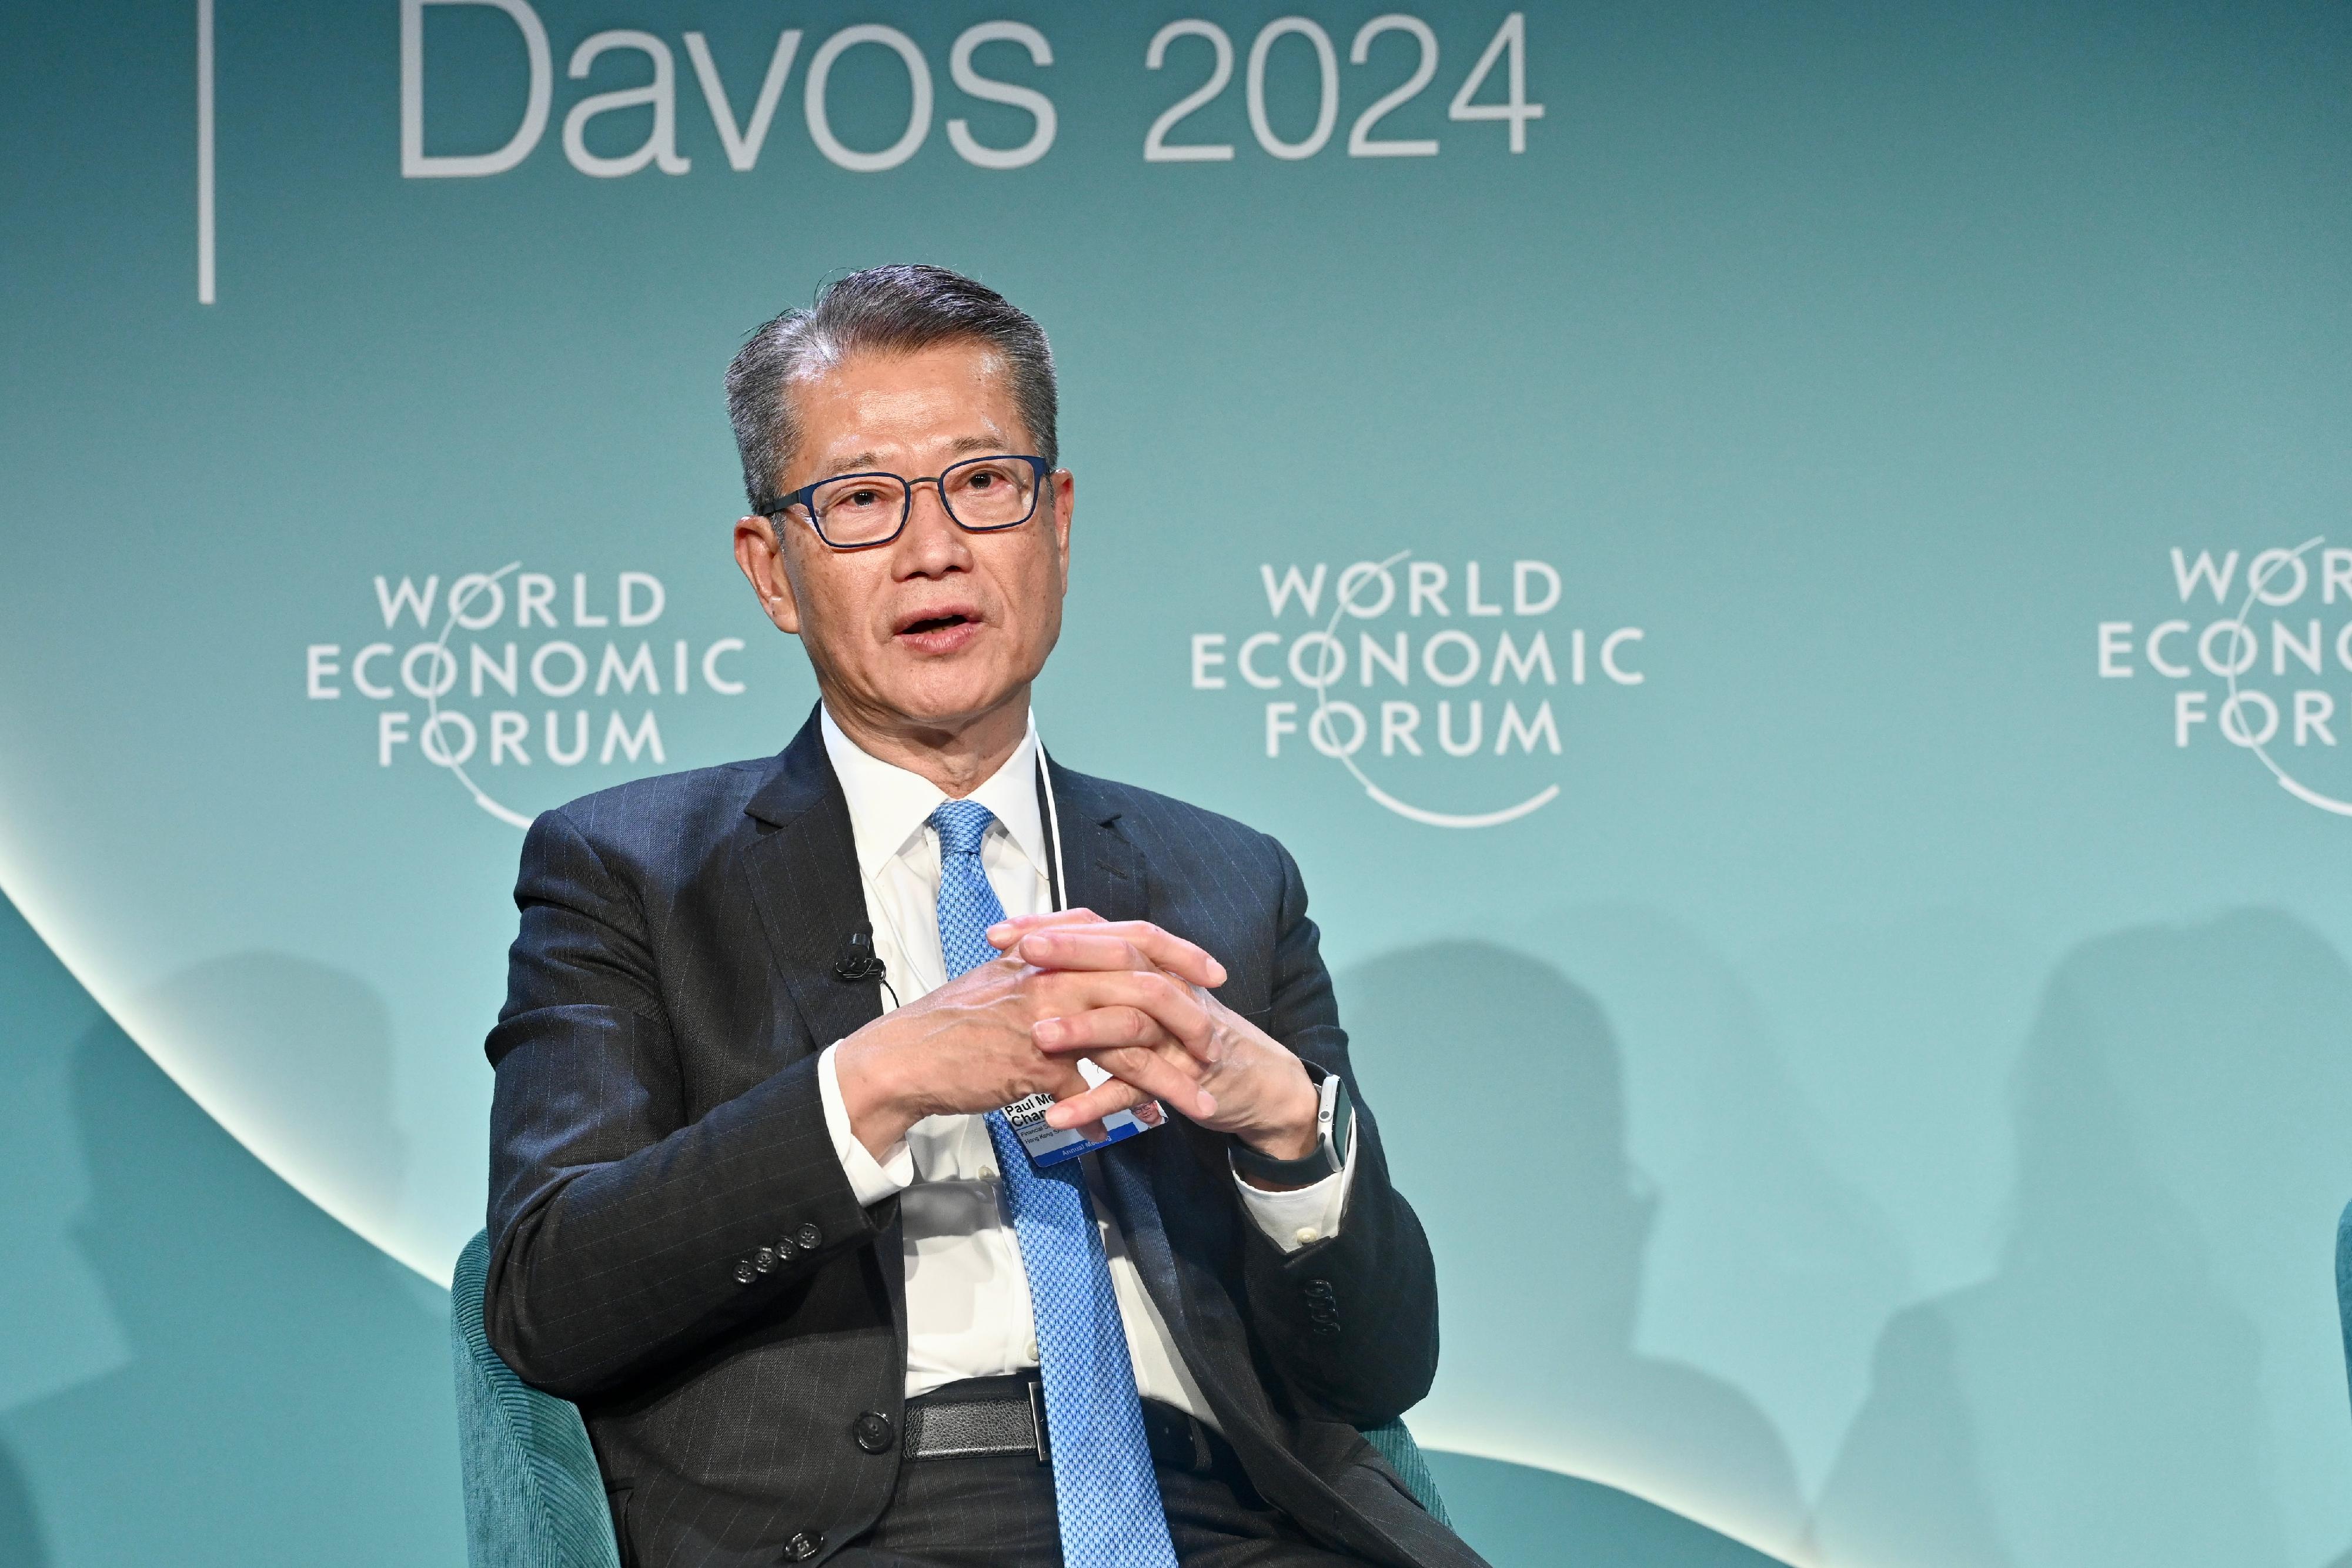 财政司司长陈茂波昨日（达沃斯时间一月十八日）在瑞士达沃斯出席世界经济论坛年会期间，参与数字资产的专题讨论会。图示陈茂波在会上发言。